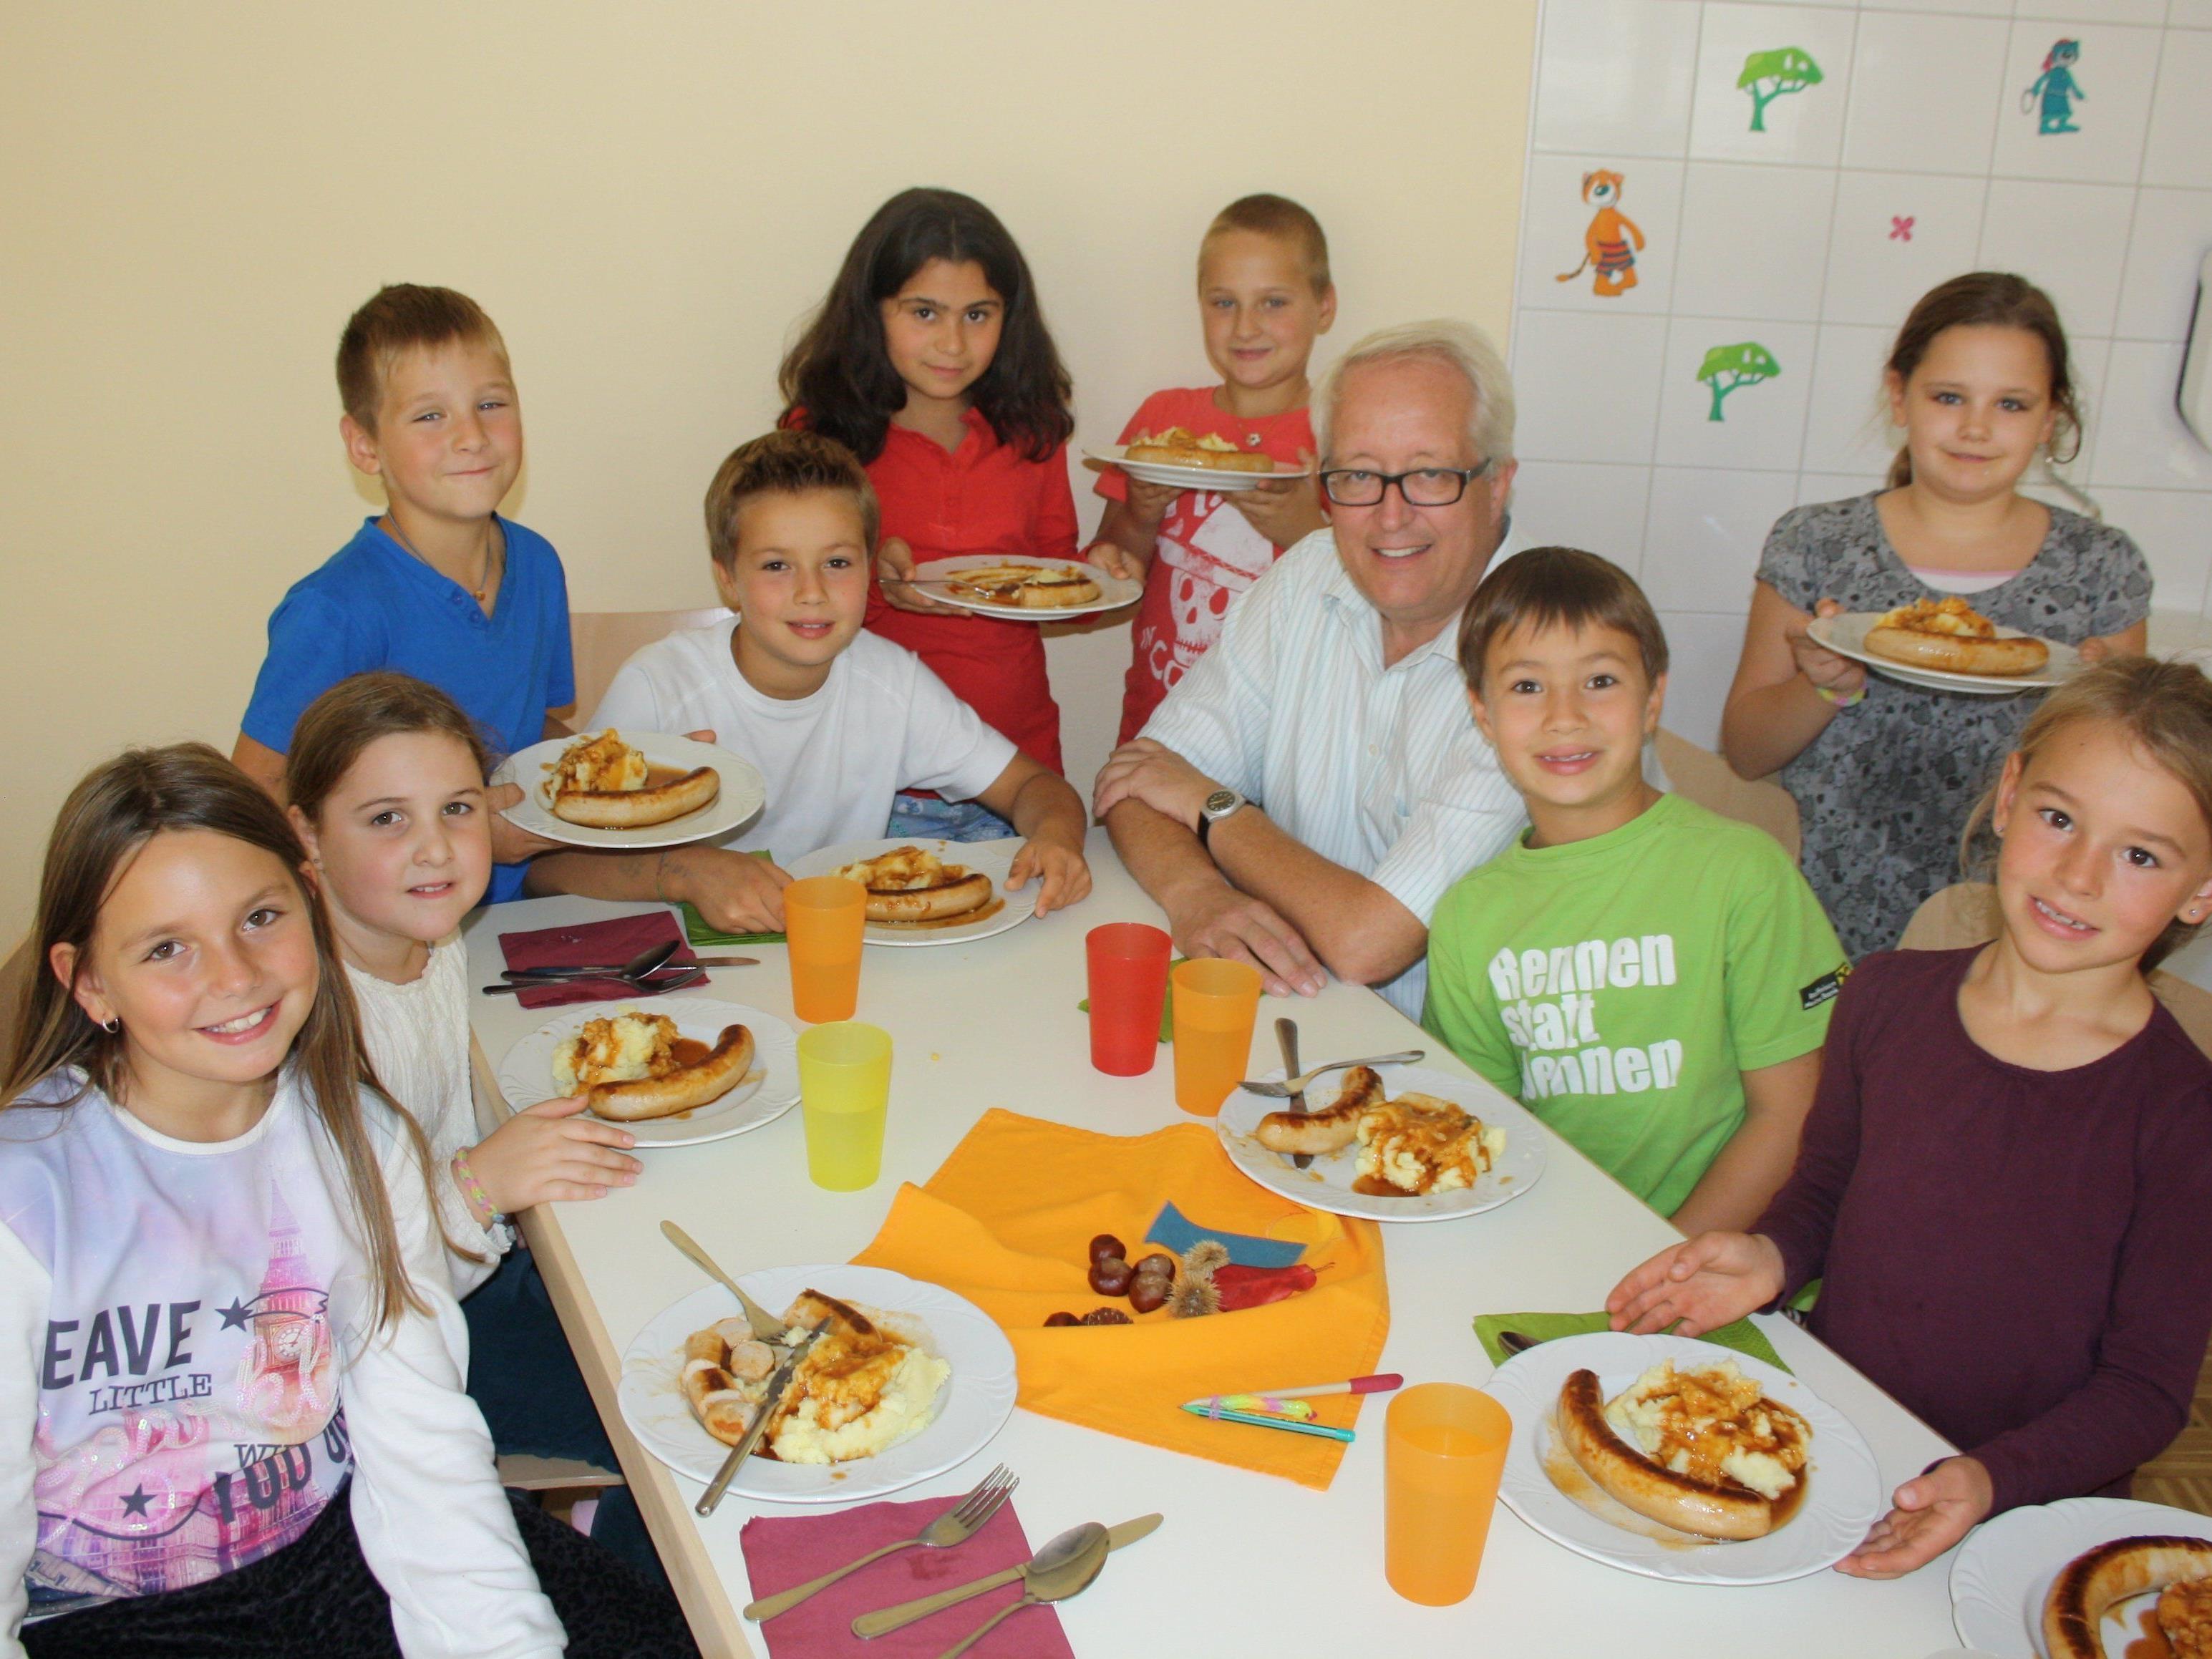 Bürgermeister Michael Simma überzeugte sich persönlich vom neuen „Mittagstisch“ und fühlte sich im Kreise der Schüler sichtlich wohl.